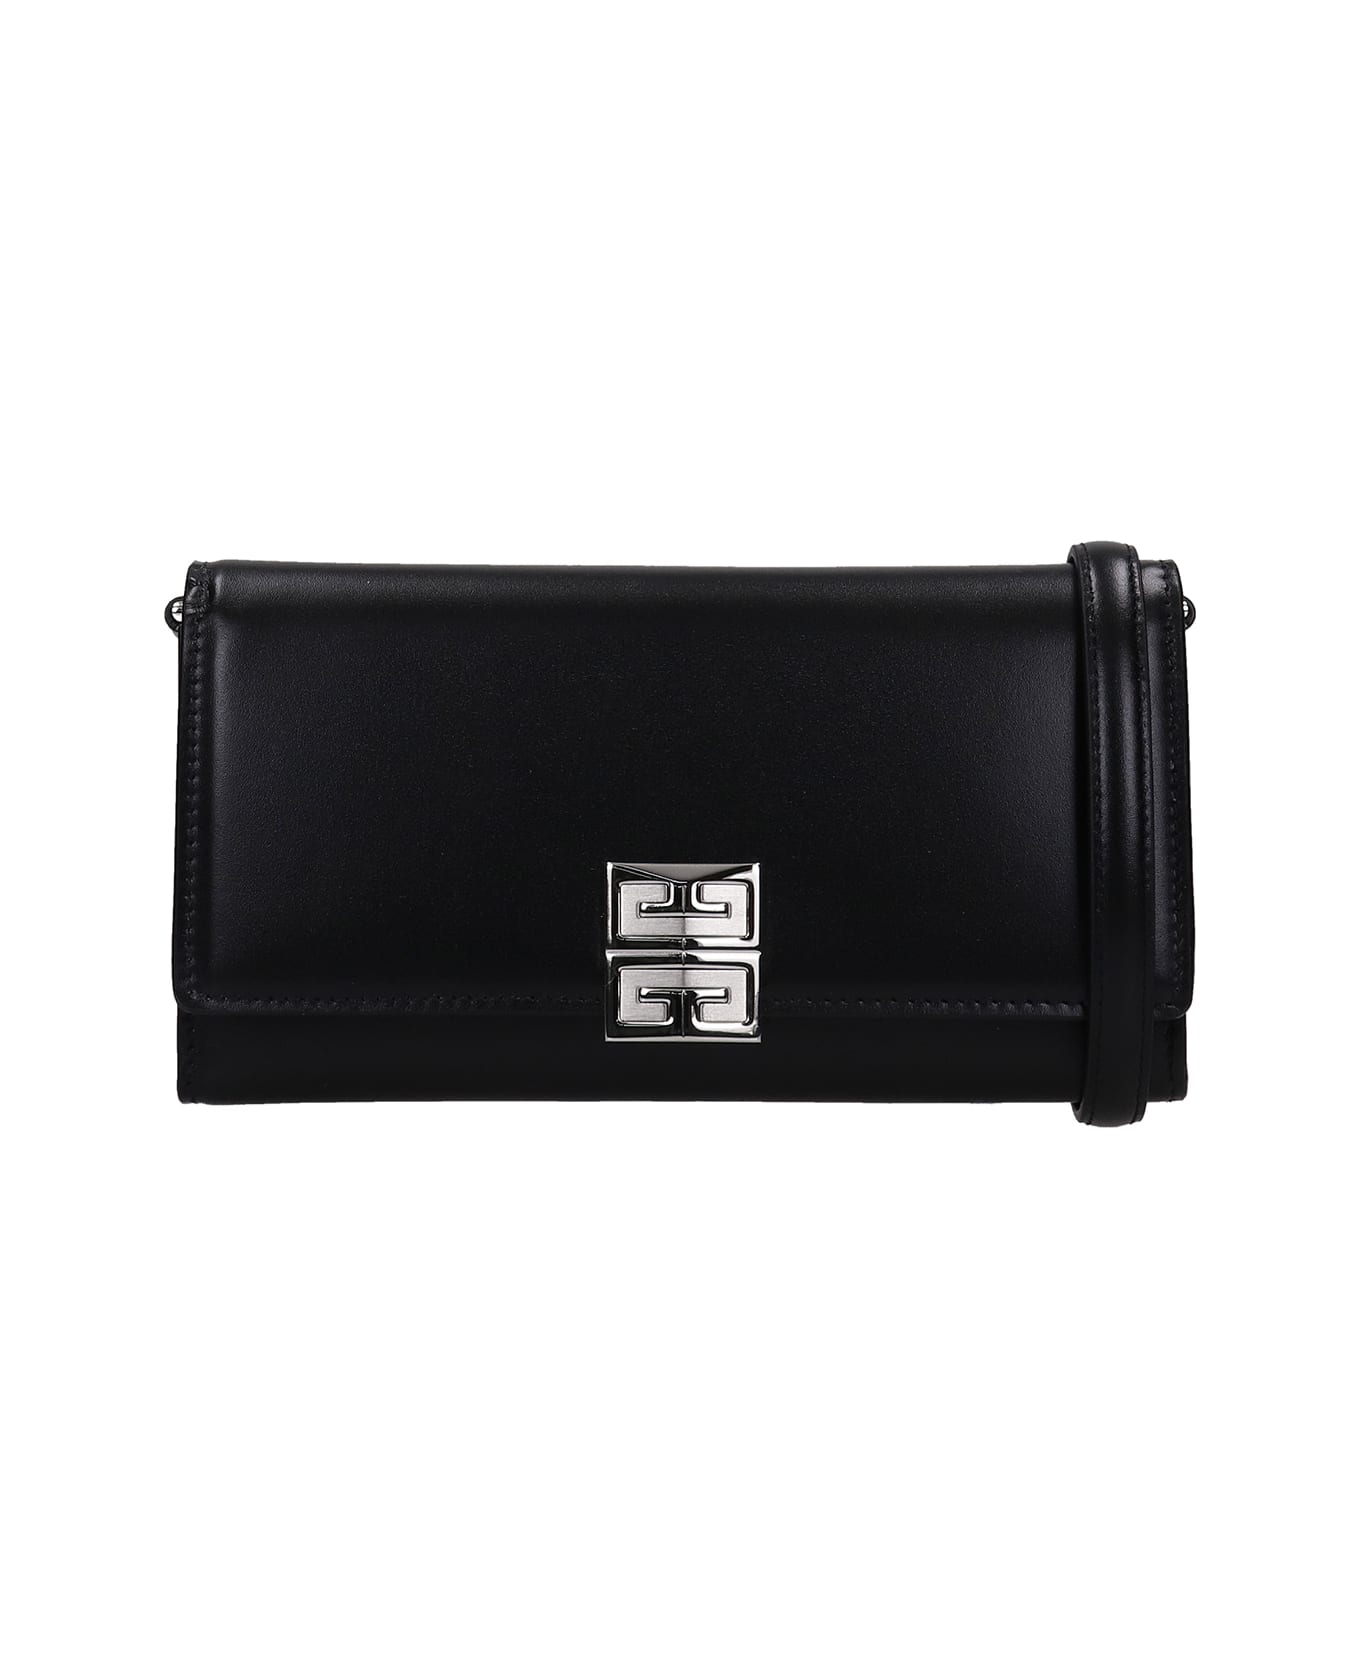 Givenchy 4 G Shoulder Bag In Black Leather - black